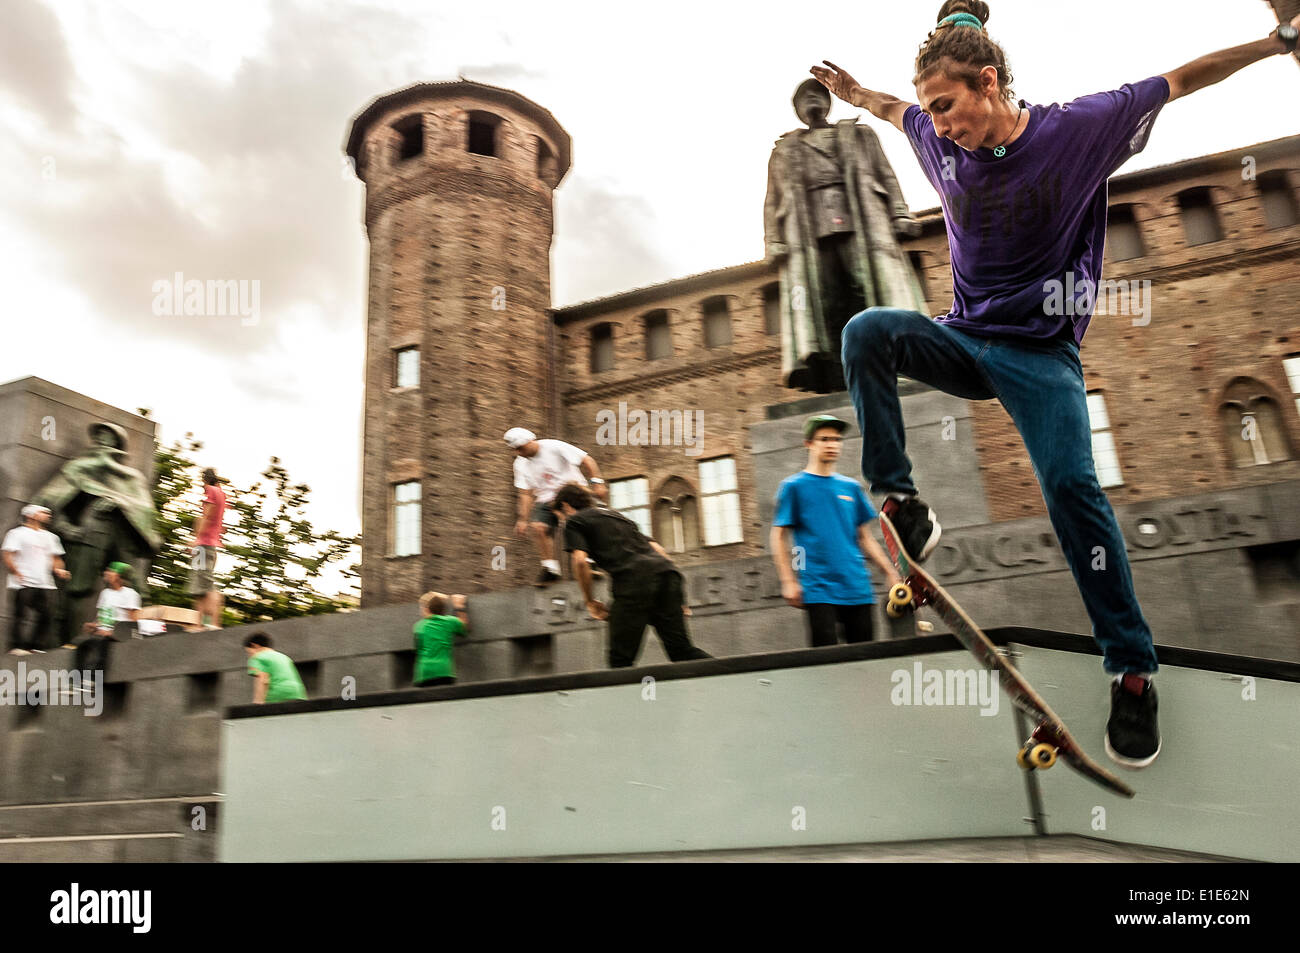 Turin, Italie. 01 Juin, 2014. 'Événement Le sport va dans le square à Turin". Turin a été choisie comme Capitale Européenne du Sport 2015 - Skateboard sur la Piazza Castello Crédit : Realy Easy Star/Alamy Live News Banque D'Images